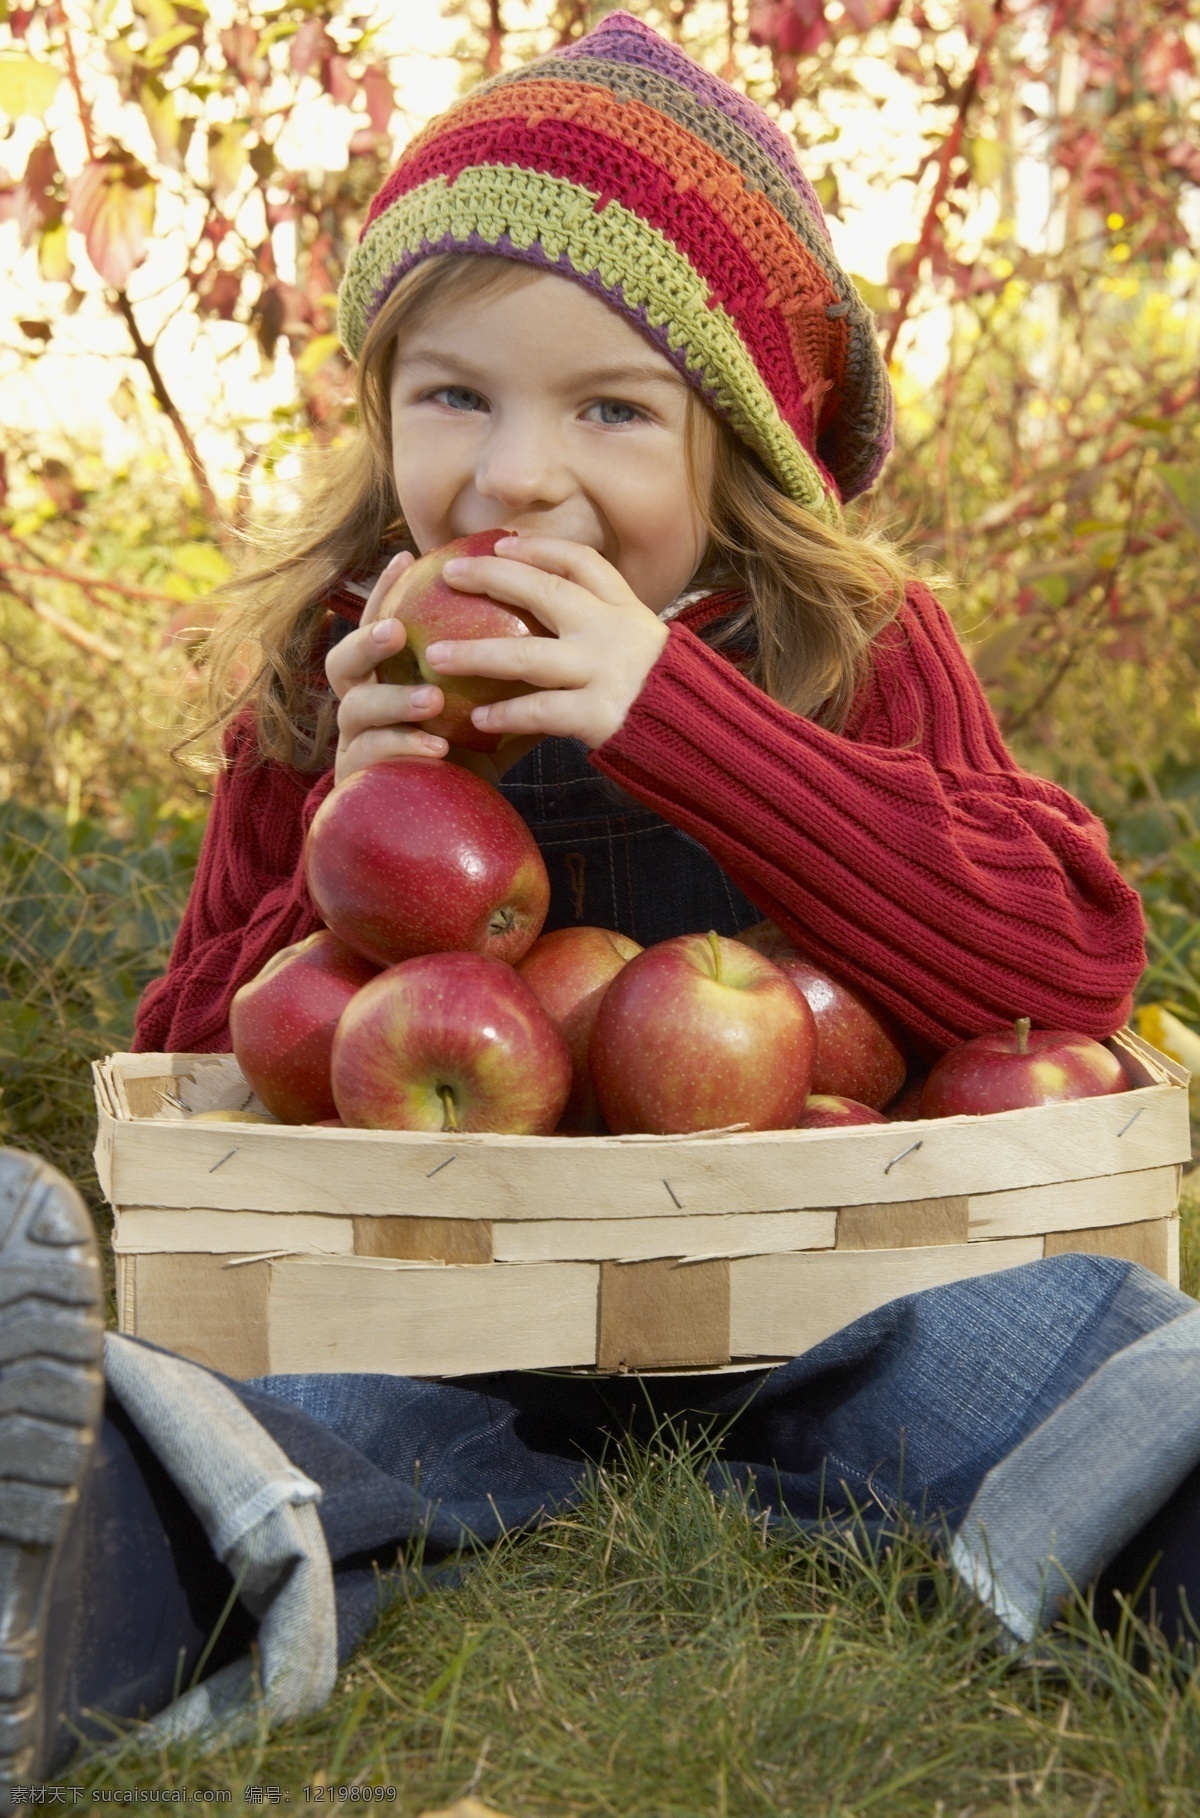 吃 苹果 小女孩 水果 吃东西 女孩 儿童 小孩 草地 野外 田野 人物 人物摄影 人物素材 生活人物 人物图片